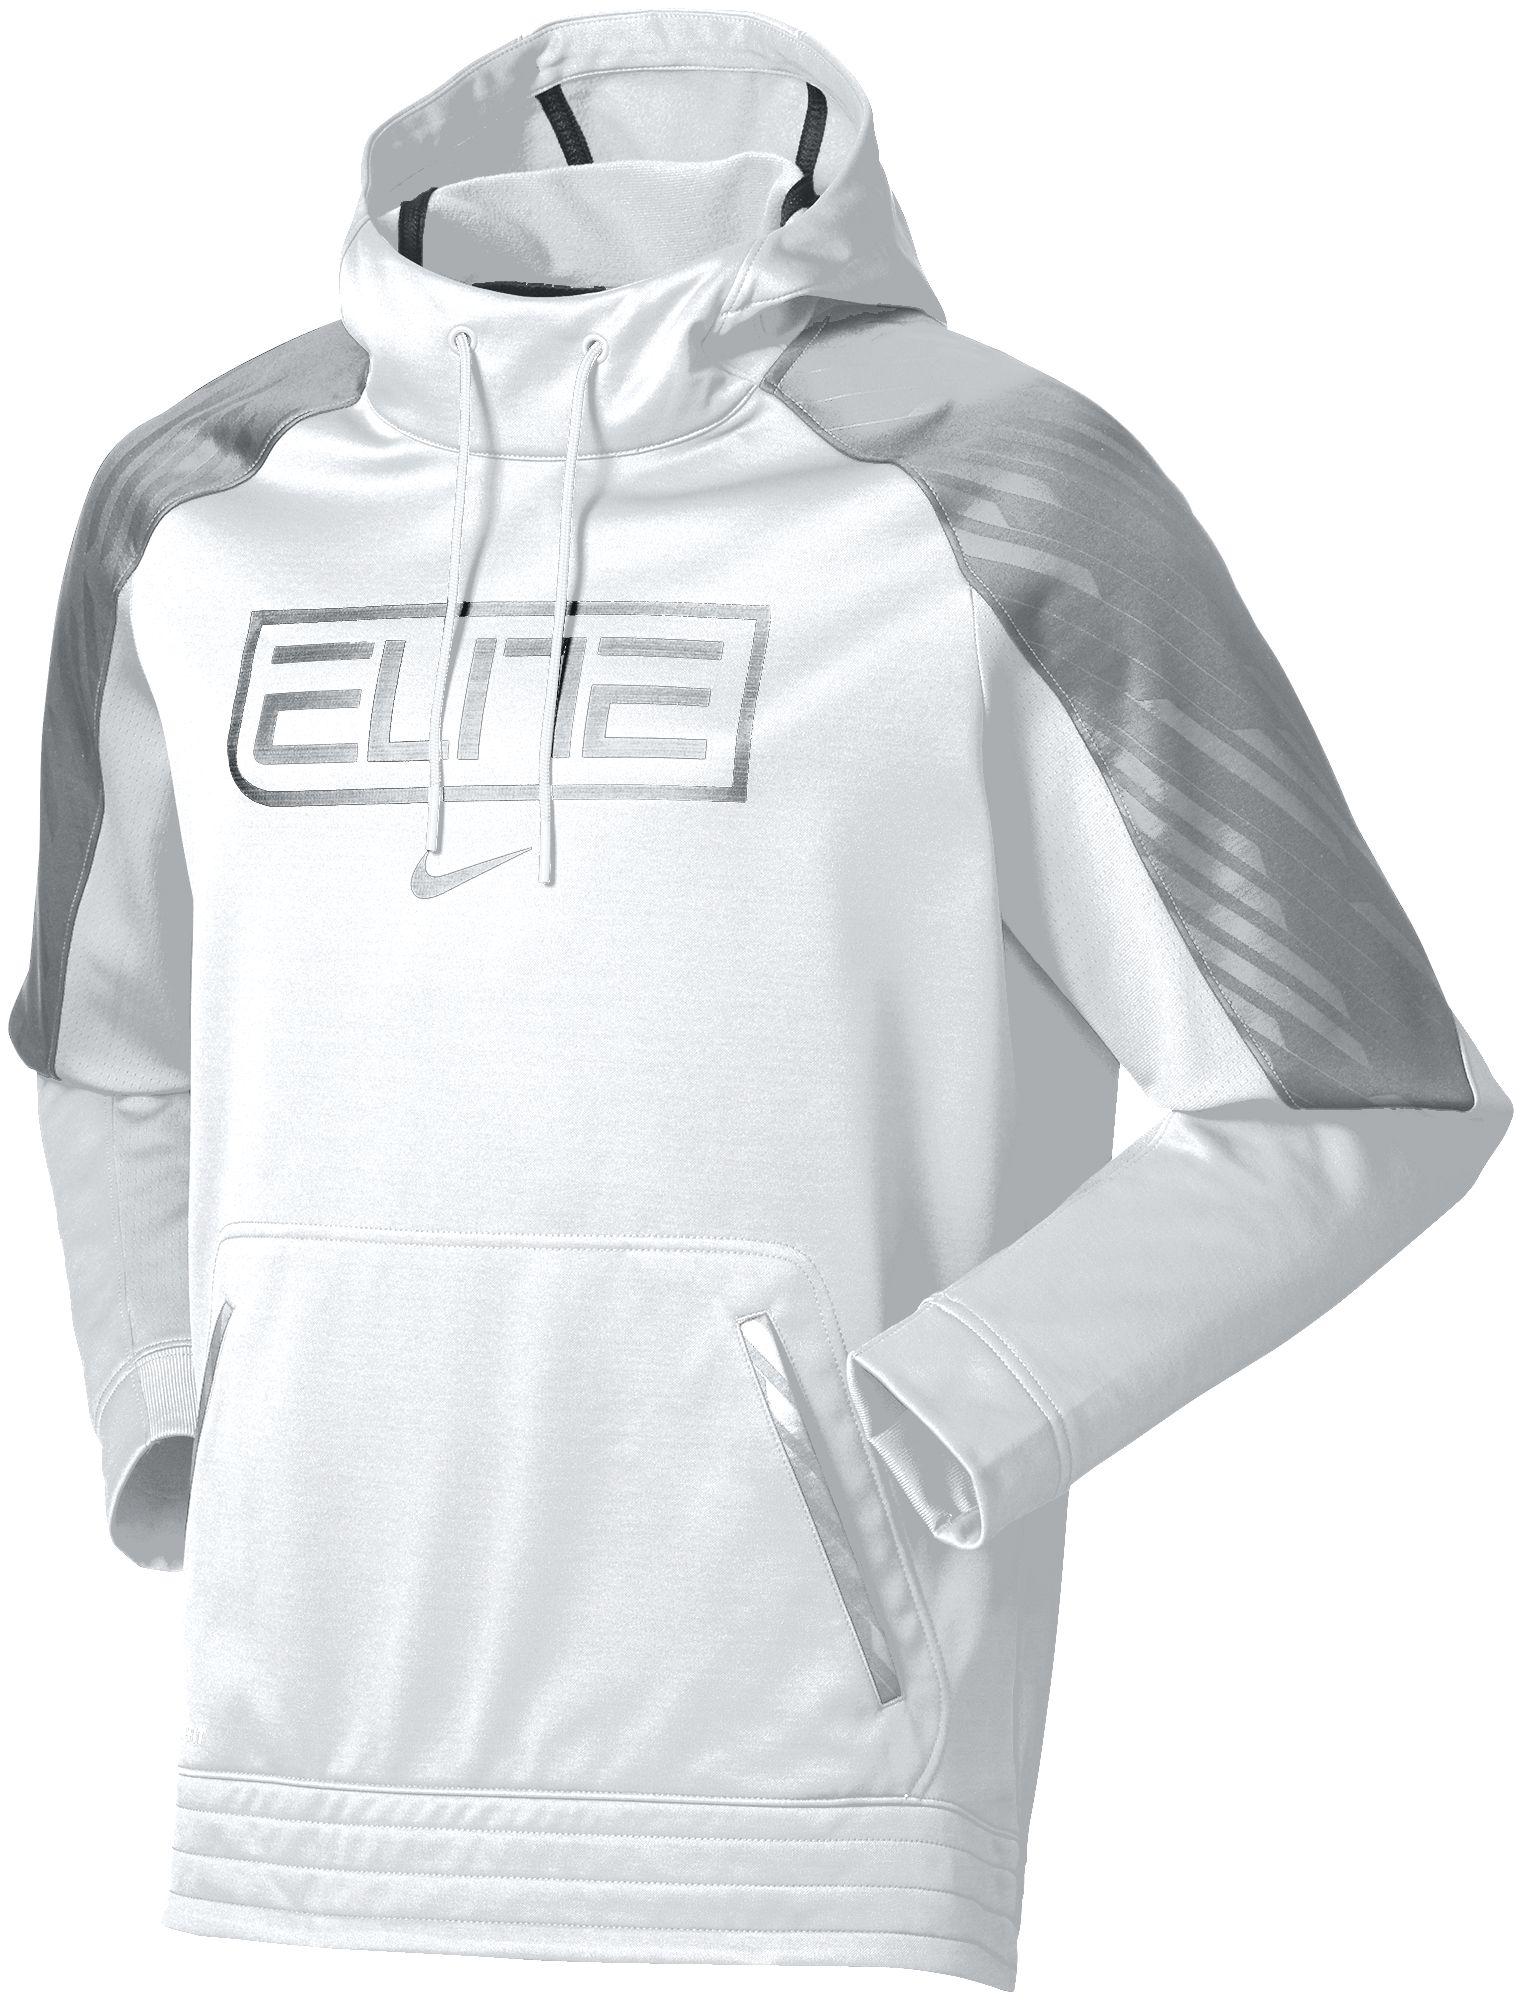 nike elite zip up hoodie